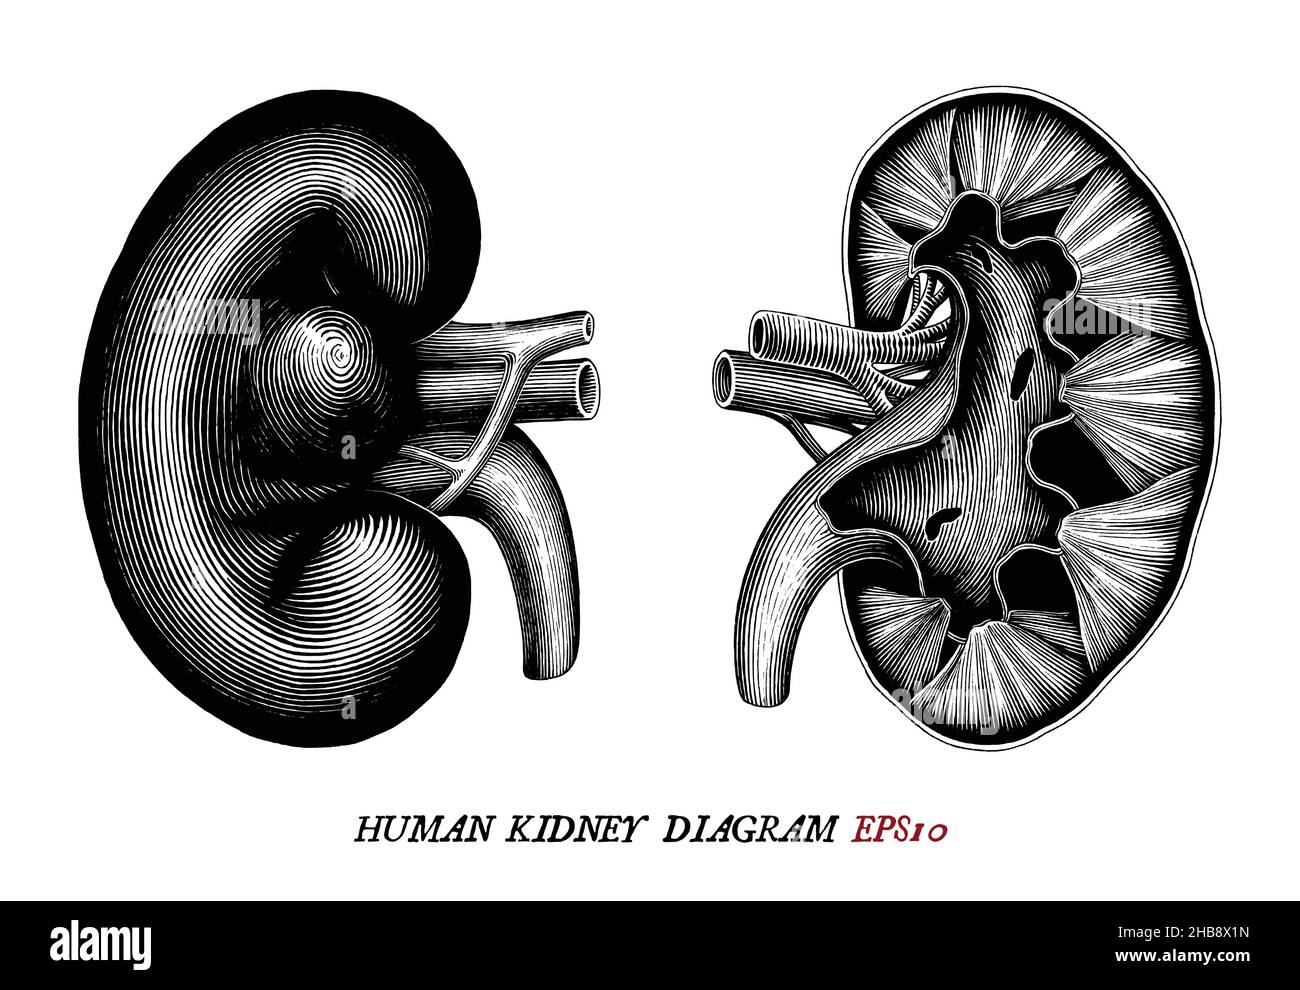 Diagramma del rene umano disegno a mano vintage incisione stile nero e bianco clipart isolato su sfondo bianco Illustrazione Vettoriale